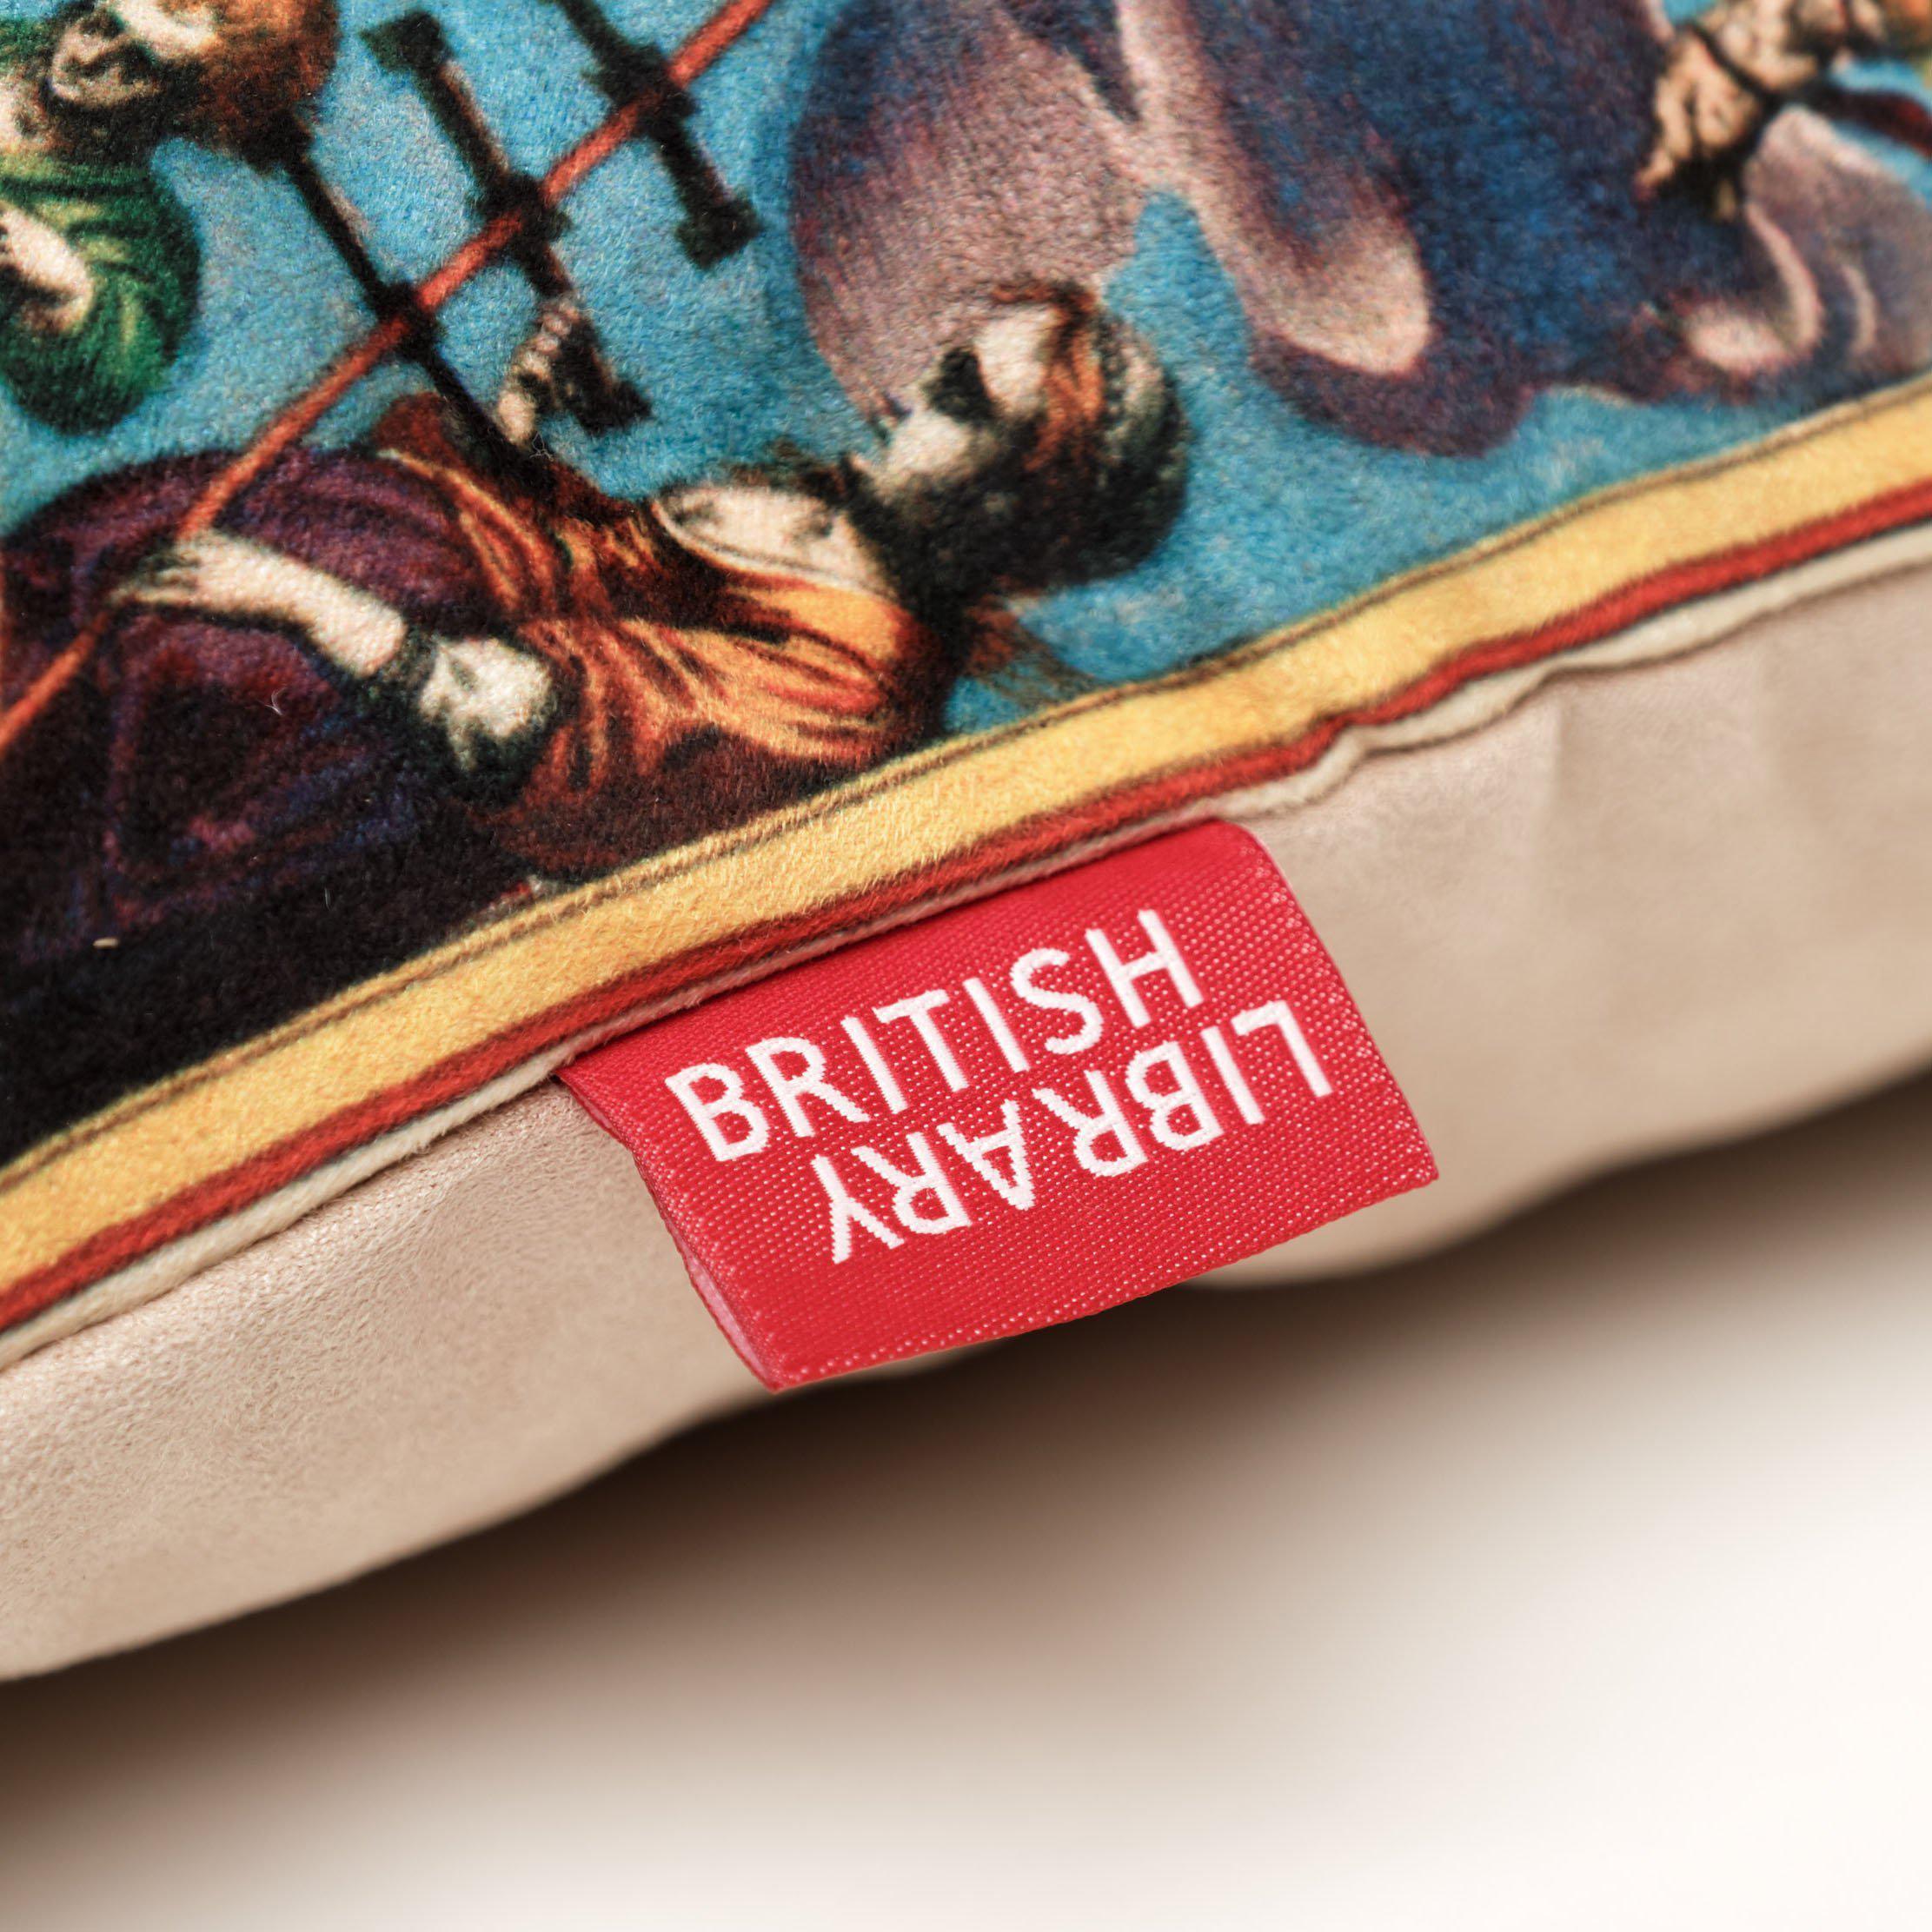 1623 World Map British Library Cushions - Handmade Cushions UK - WeLoveCushions